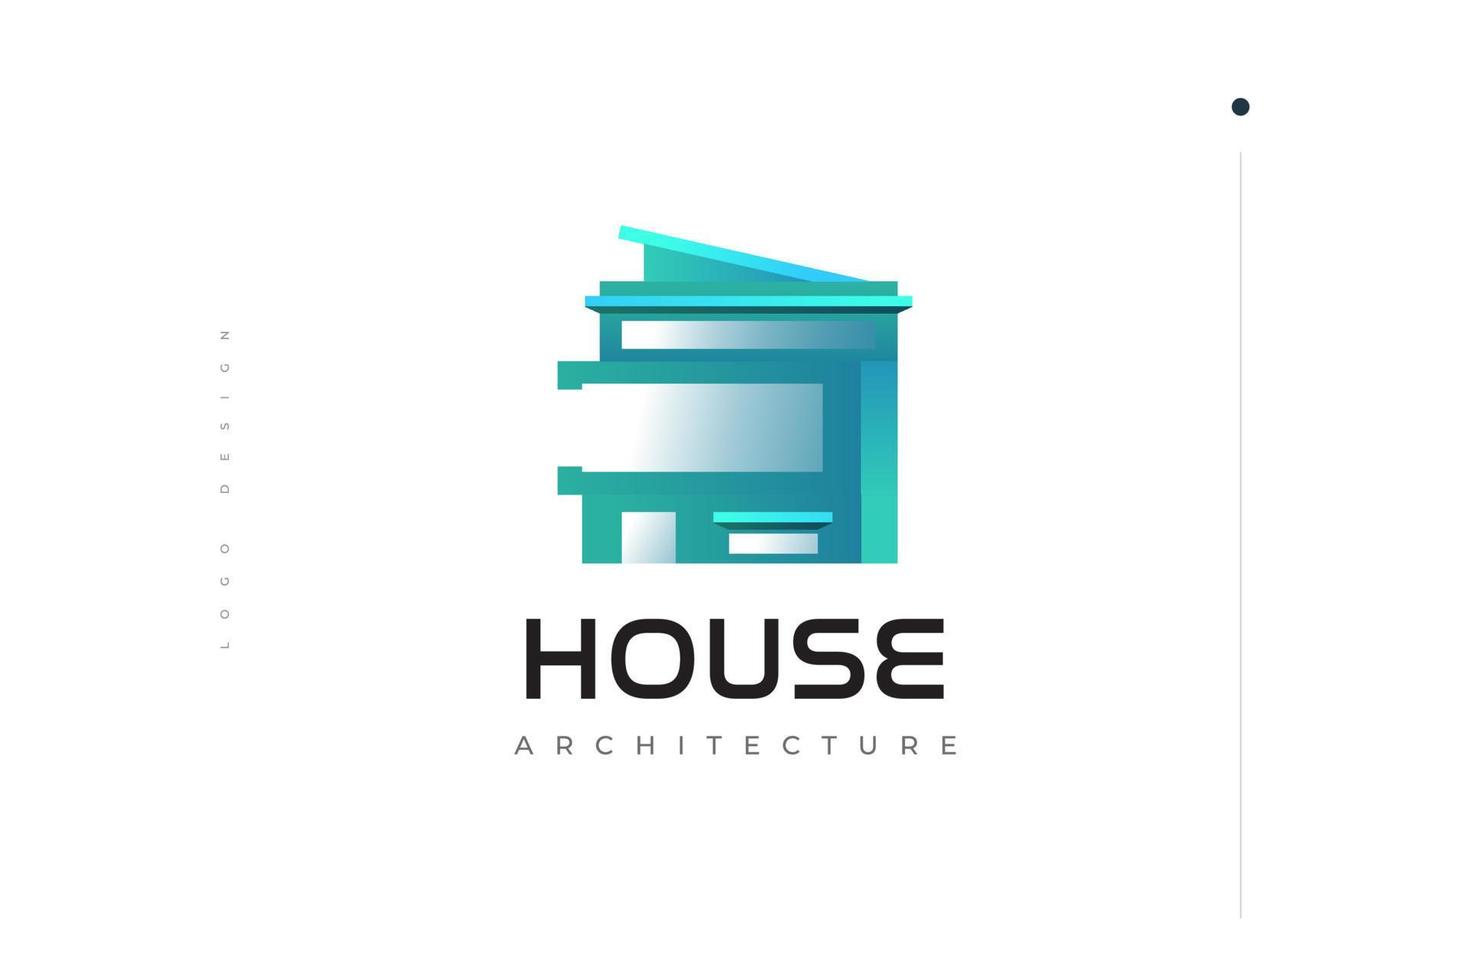 modernes und futuristisches hauslogodesign. blaues abstraktes hauslogo für immobilien- oder gebäudearchitekturmarkenidentität vektor